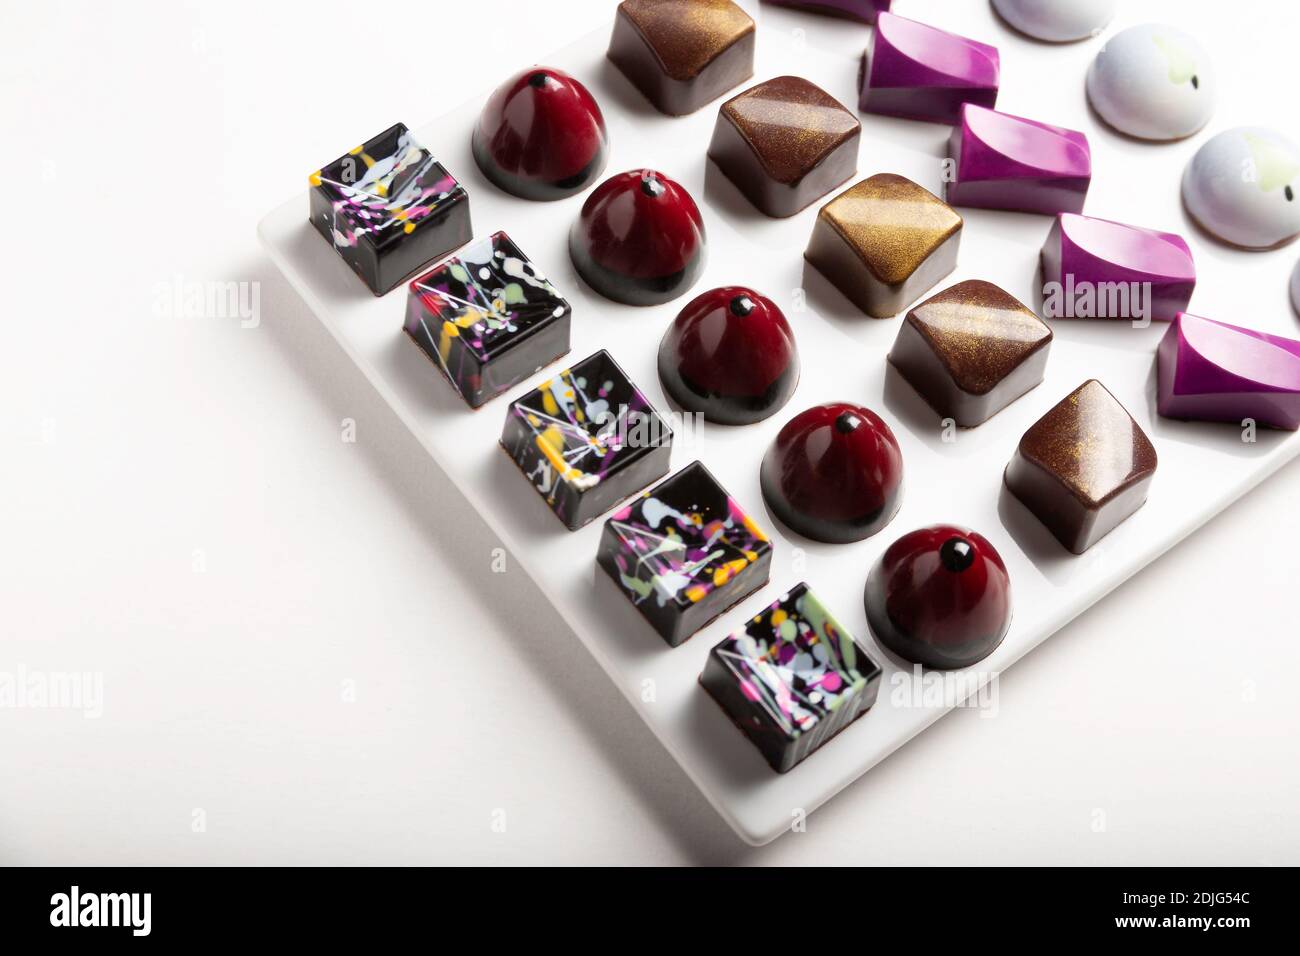 variedad de lujosos bonbones de chocolate hechos a mano con ganache sobre fondo blanco. Exclusivo bonbon artesanal Foto de stock